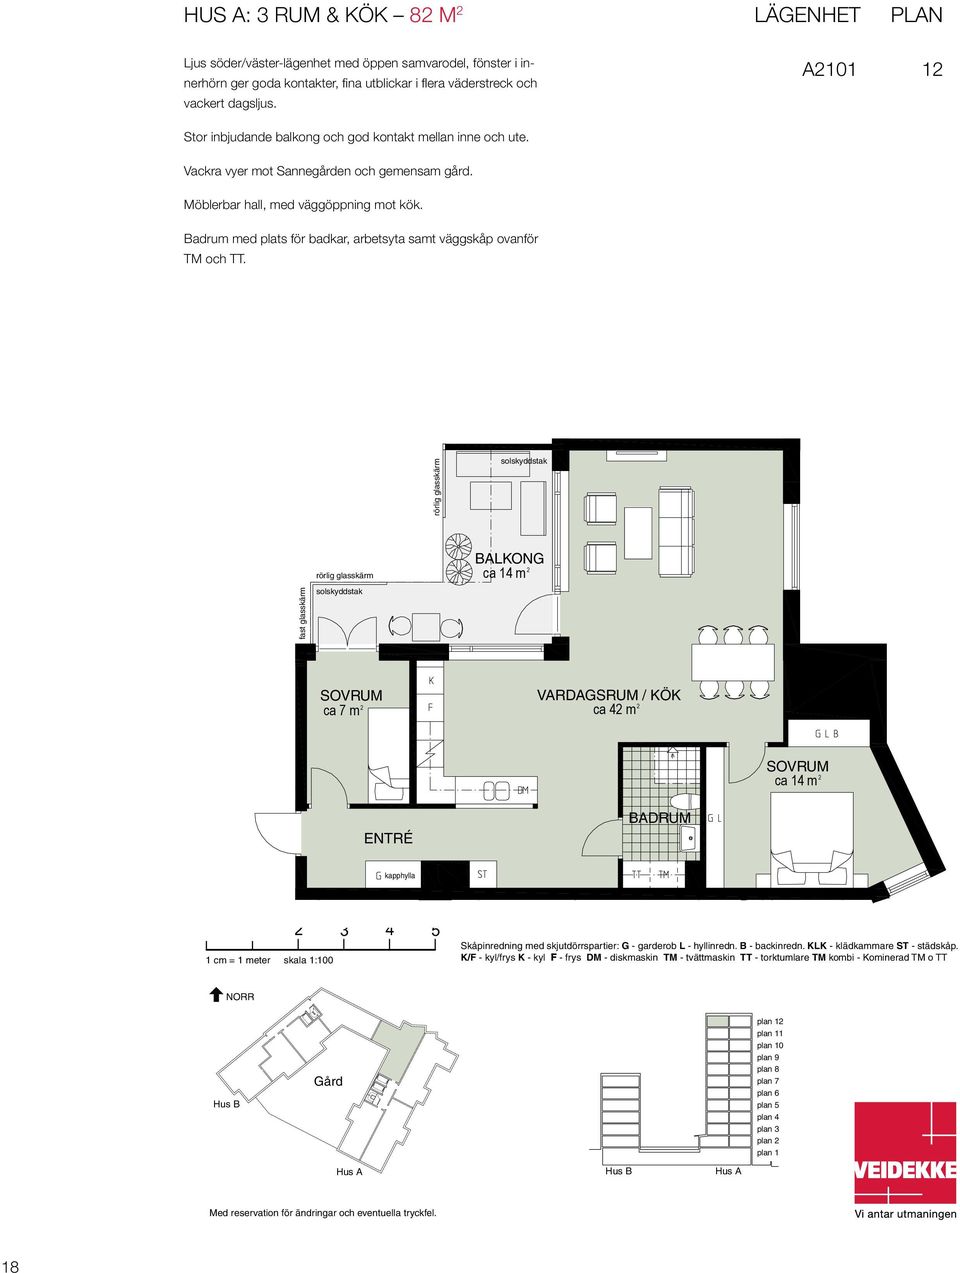 Lägenhet PLAN Lägenhet Plan Hus A101 1 A101 1 A Möblerbar hall, med väggöppning mot kök. Badrum med plats för badkar, arbetsyta samt väggskåp ovanför TM och TT.